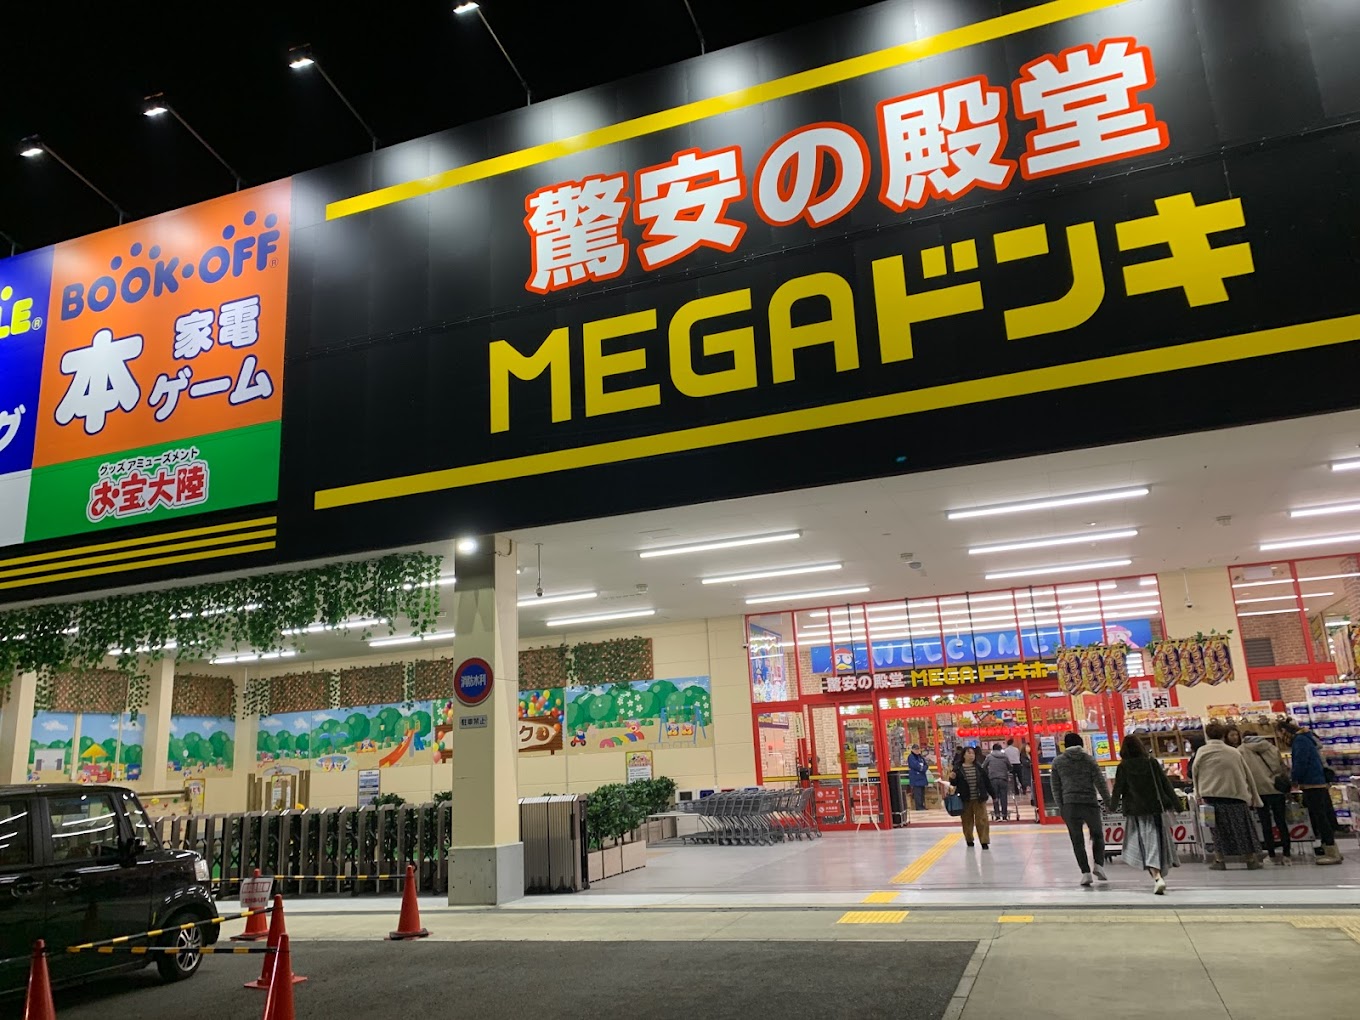 MEGAドン・キホーテ和泉中央店